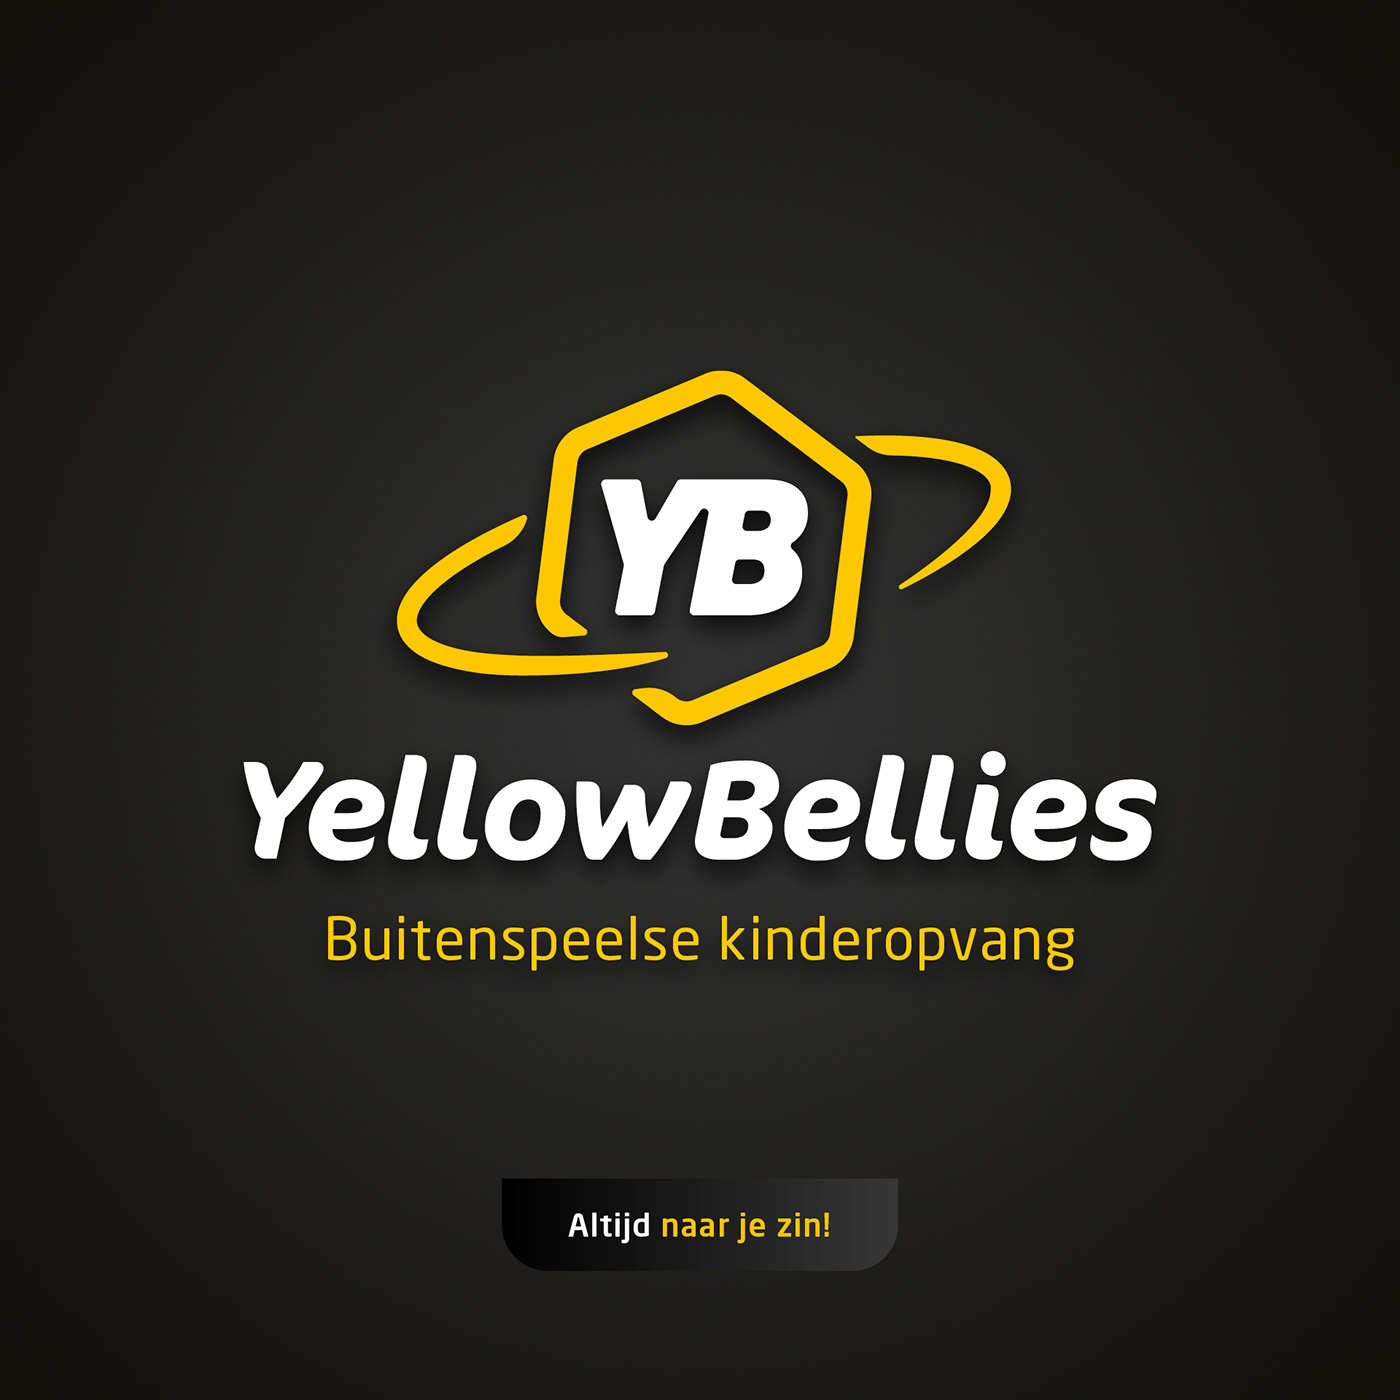 bellies buitenspeelse geelbuik Kinderopvang Mzoem oudewater yellowbellie branding  identity logo